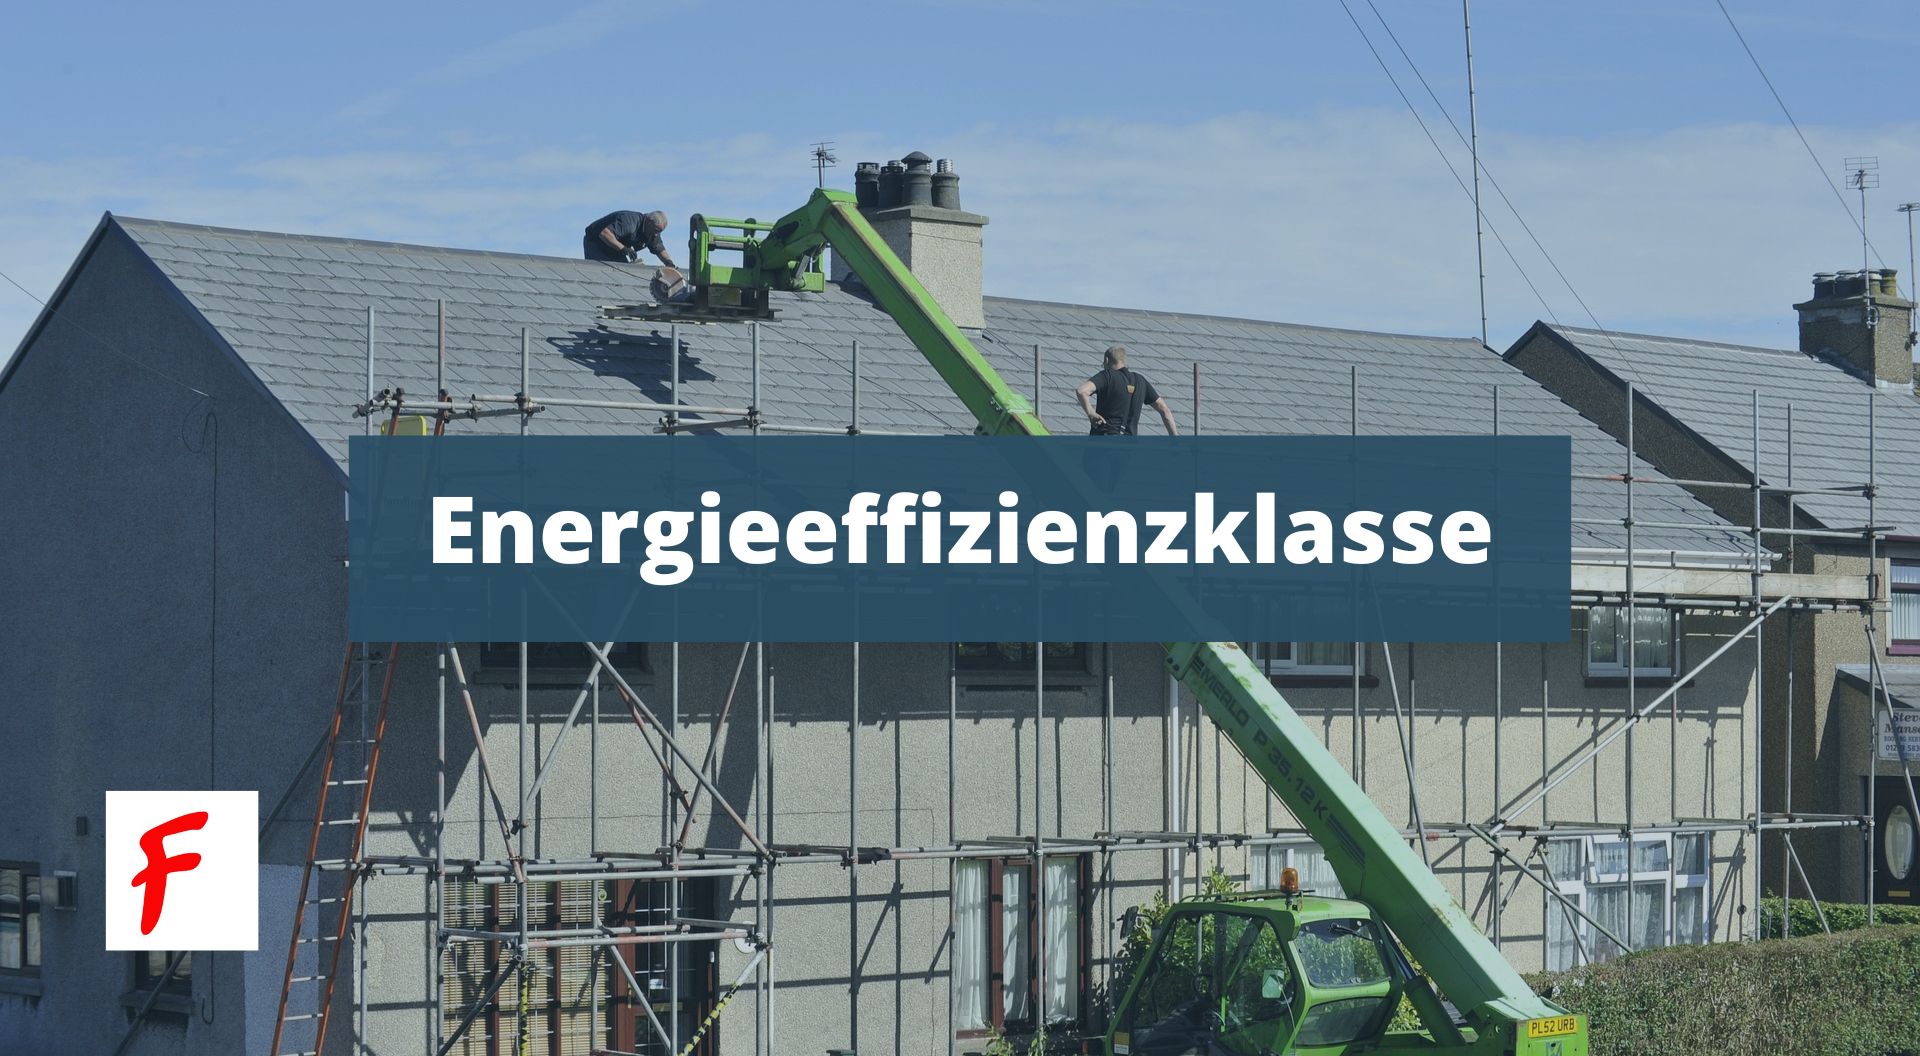 Энергоэффективность жилых зданий в Германии